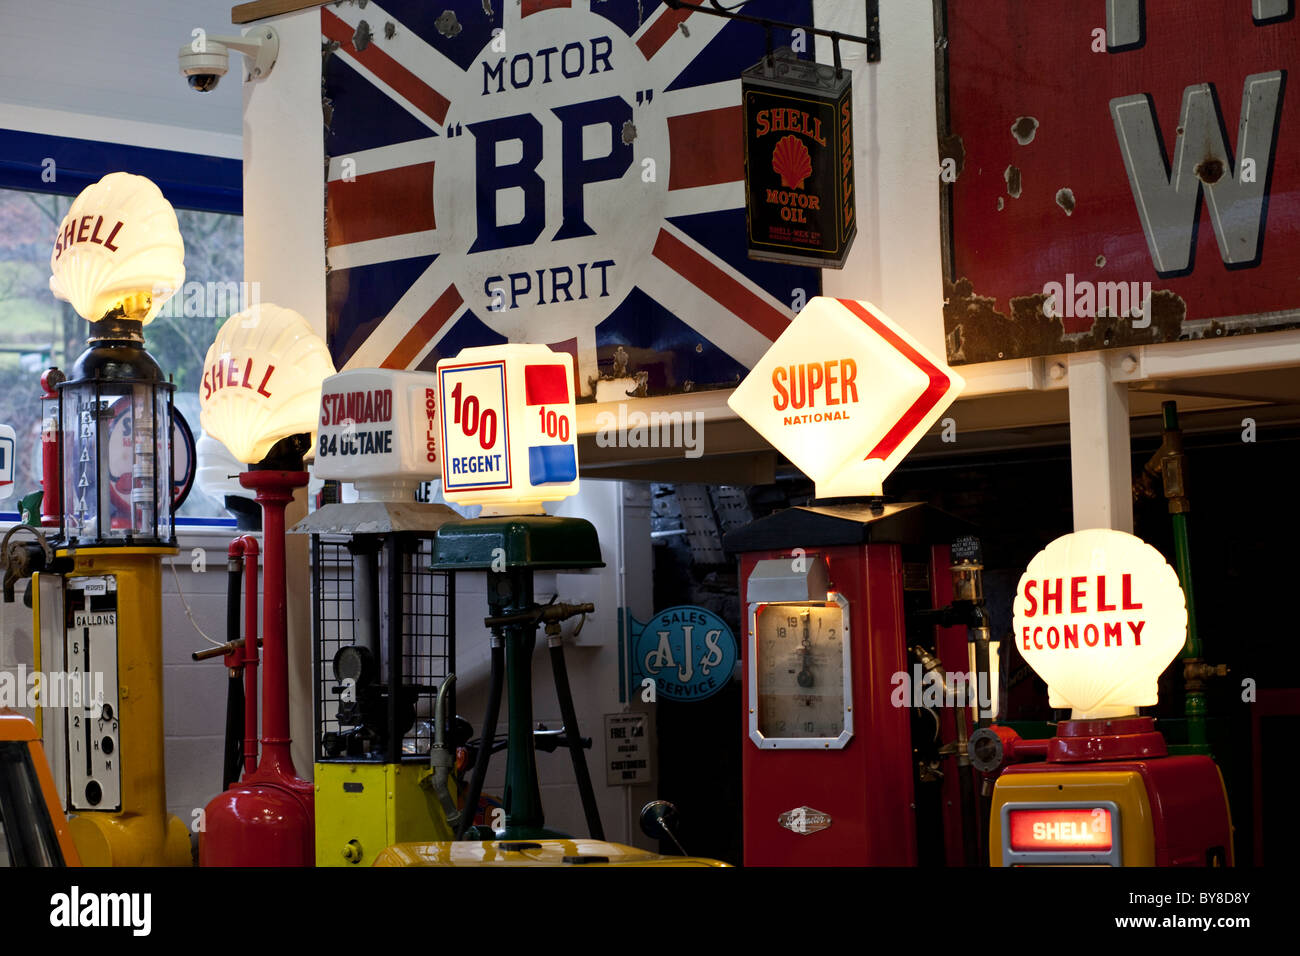 Lakeland Motor Museum, en Backbarrow, Cumbria, Reino Unido, mostrando las antiguas bombas de gasolina Foto de stock